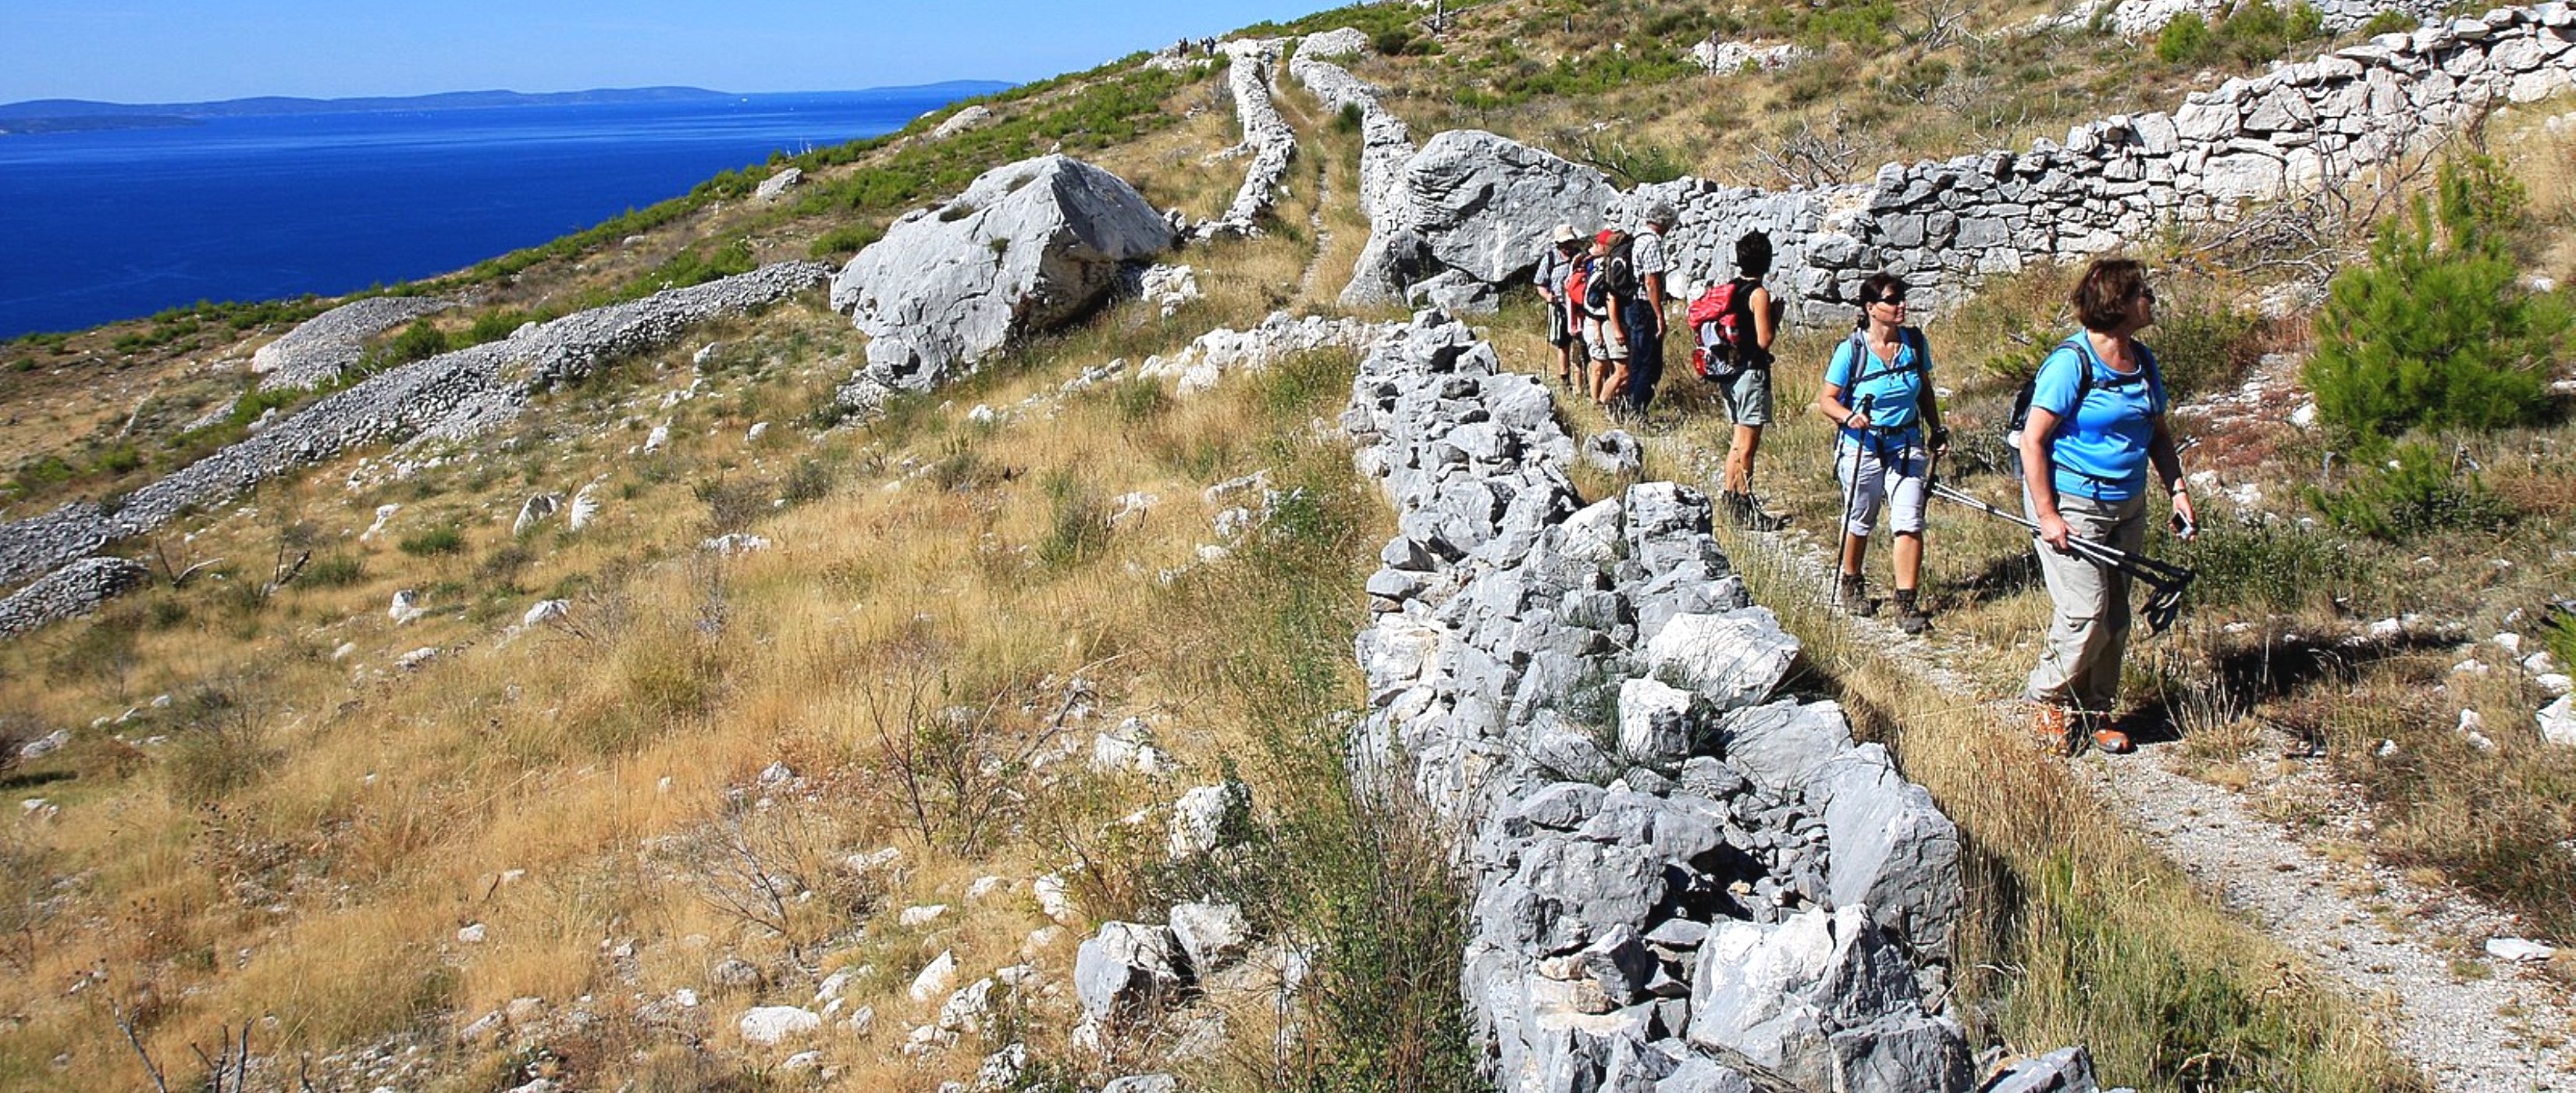 Wanderung im dalmatinischen Kstengebiet - Lupe Reisen